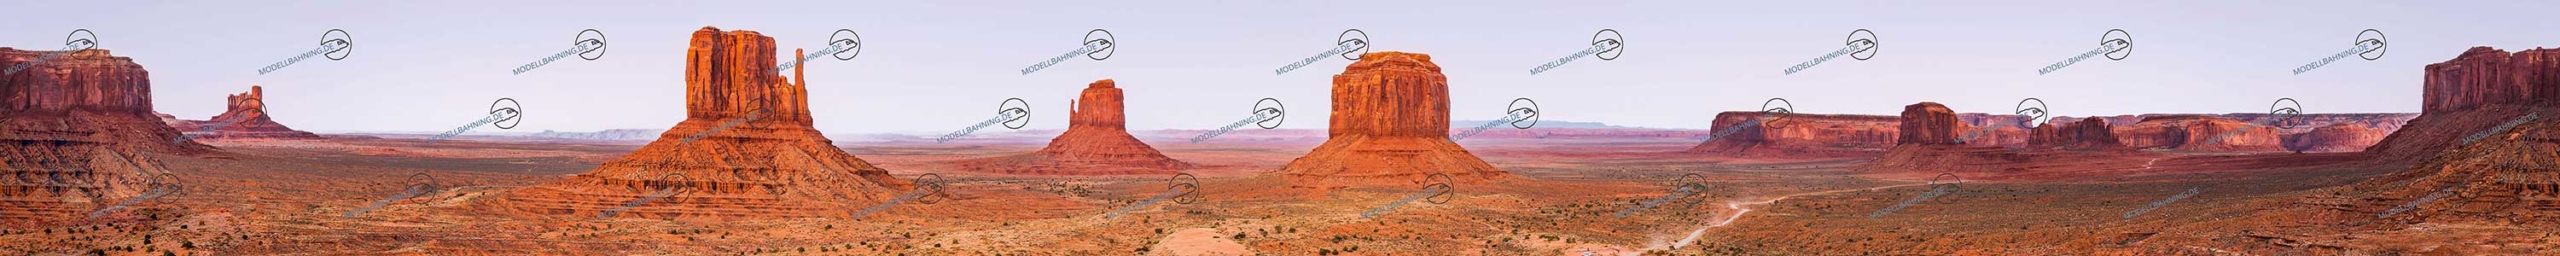 USA Modellbahnhintergrund "Monument Valley" 9 Meter, endlos! 1